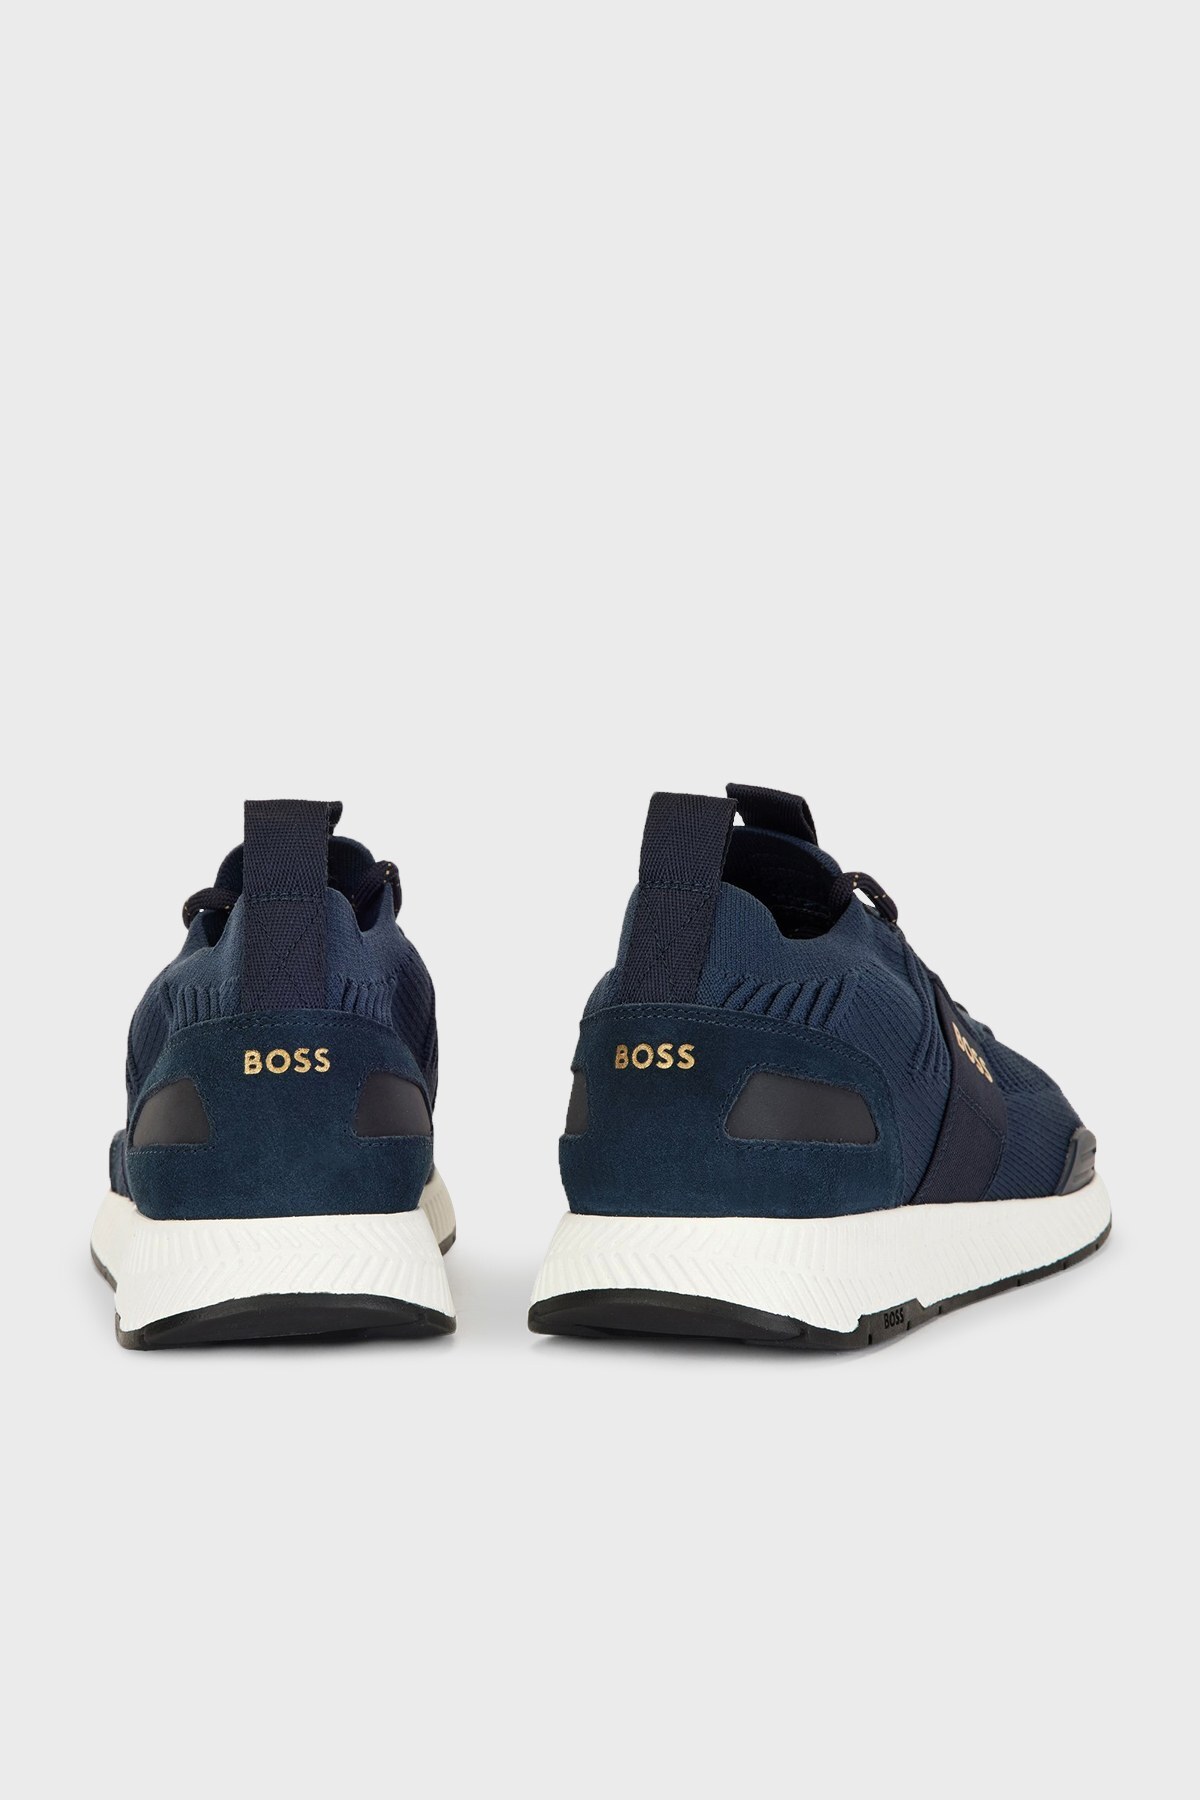 Boss Logolu Sneaker Erkek Ayakkabı 50470596 407 LACİVERT